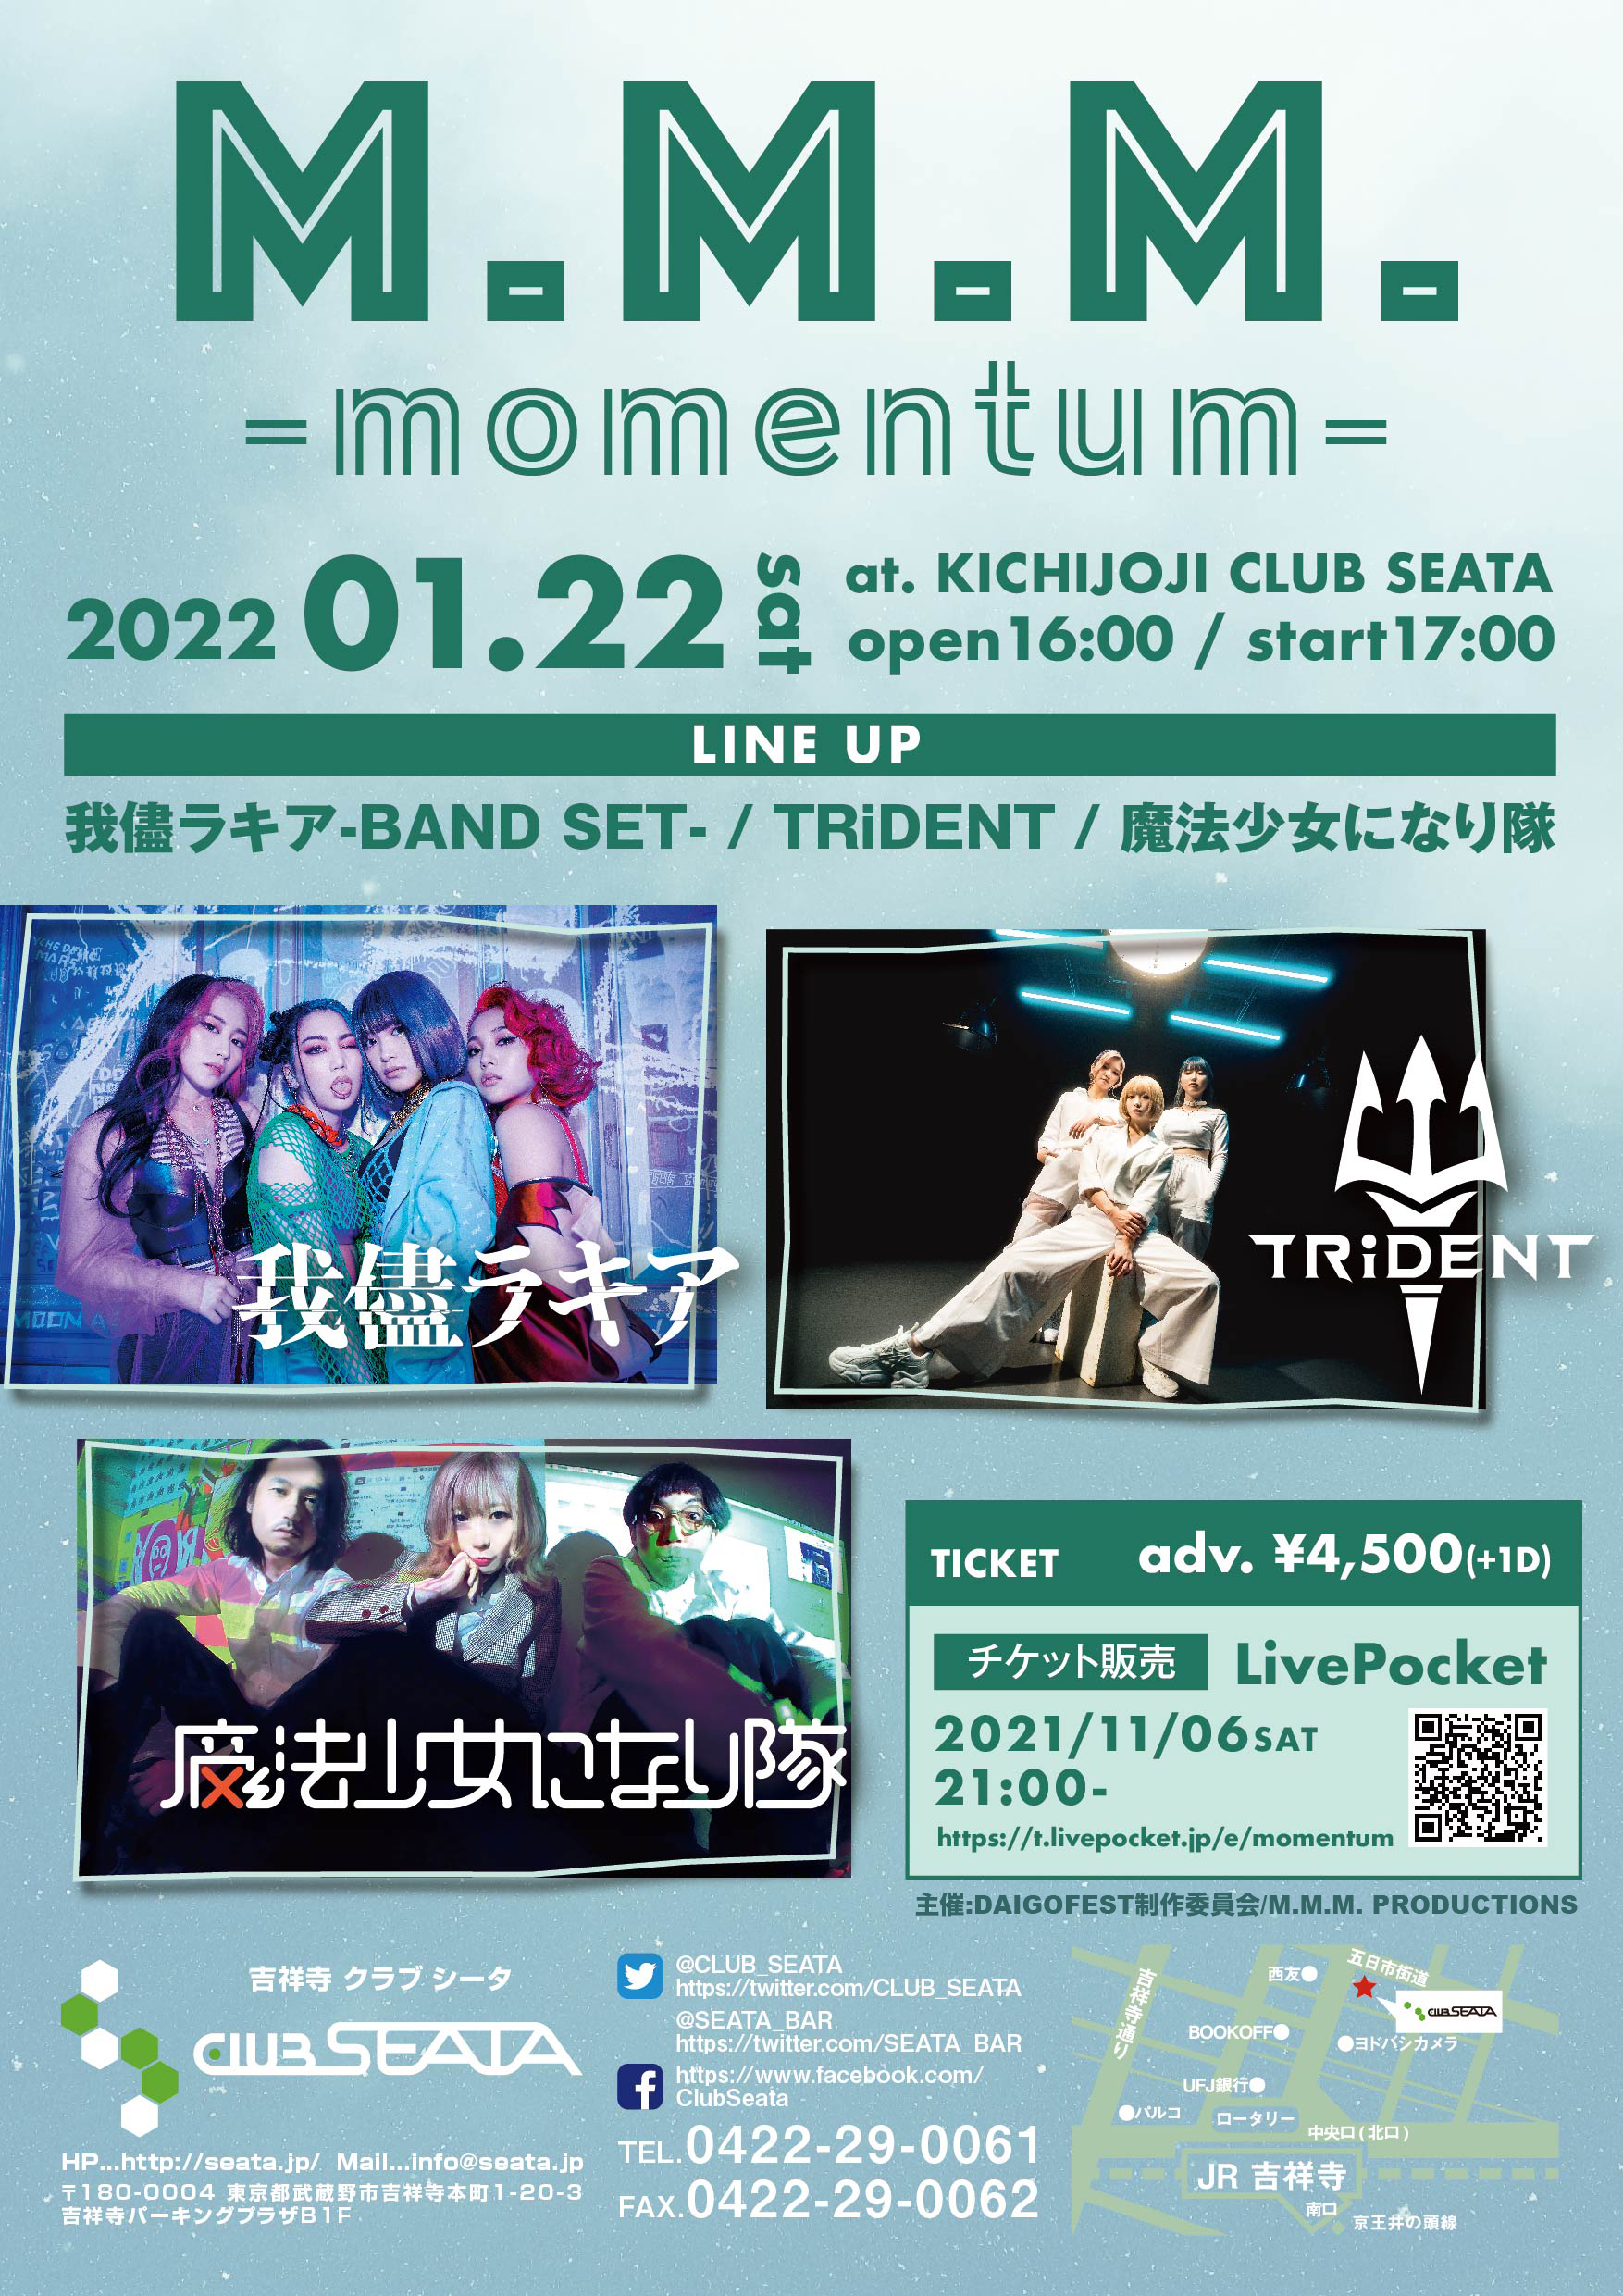 M.M.M. -momentum-